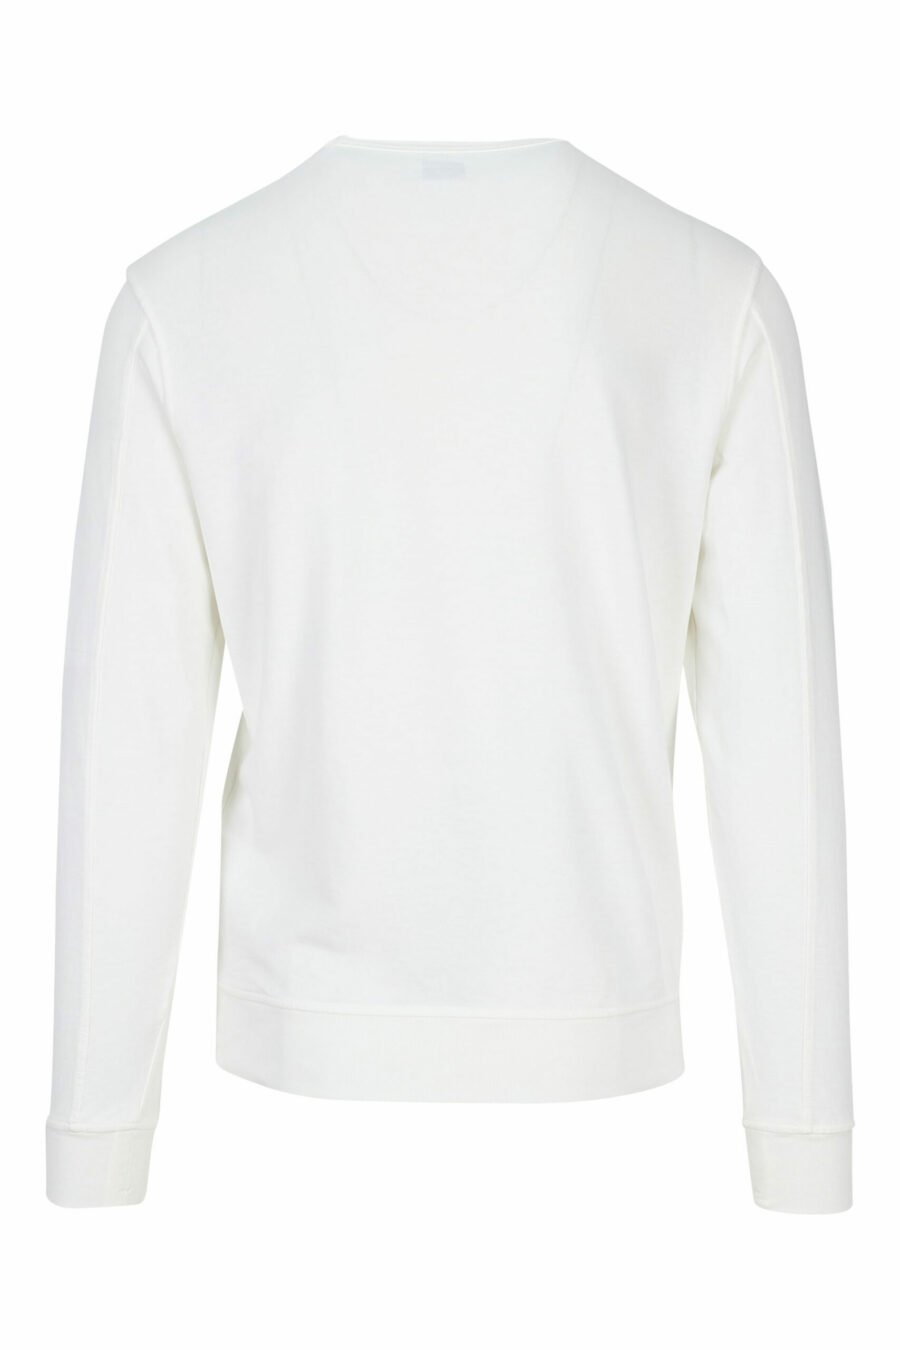 Weißes Sweatshirt mit Minilogue-Seitenlinse - 7620943591705 1 skaliert